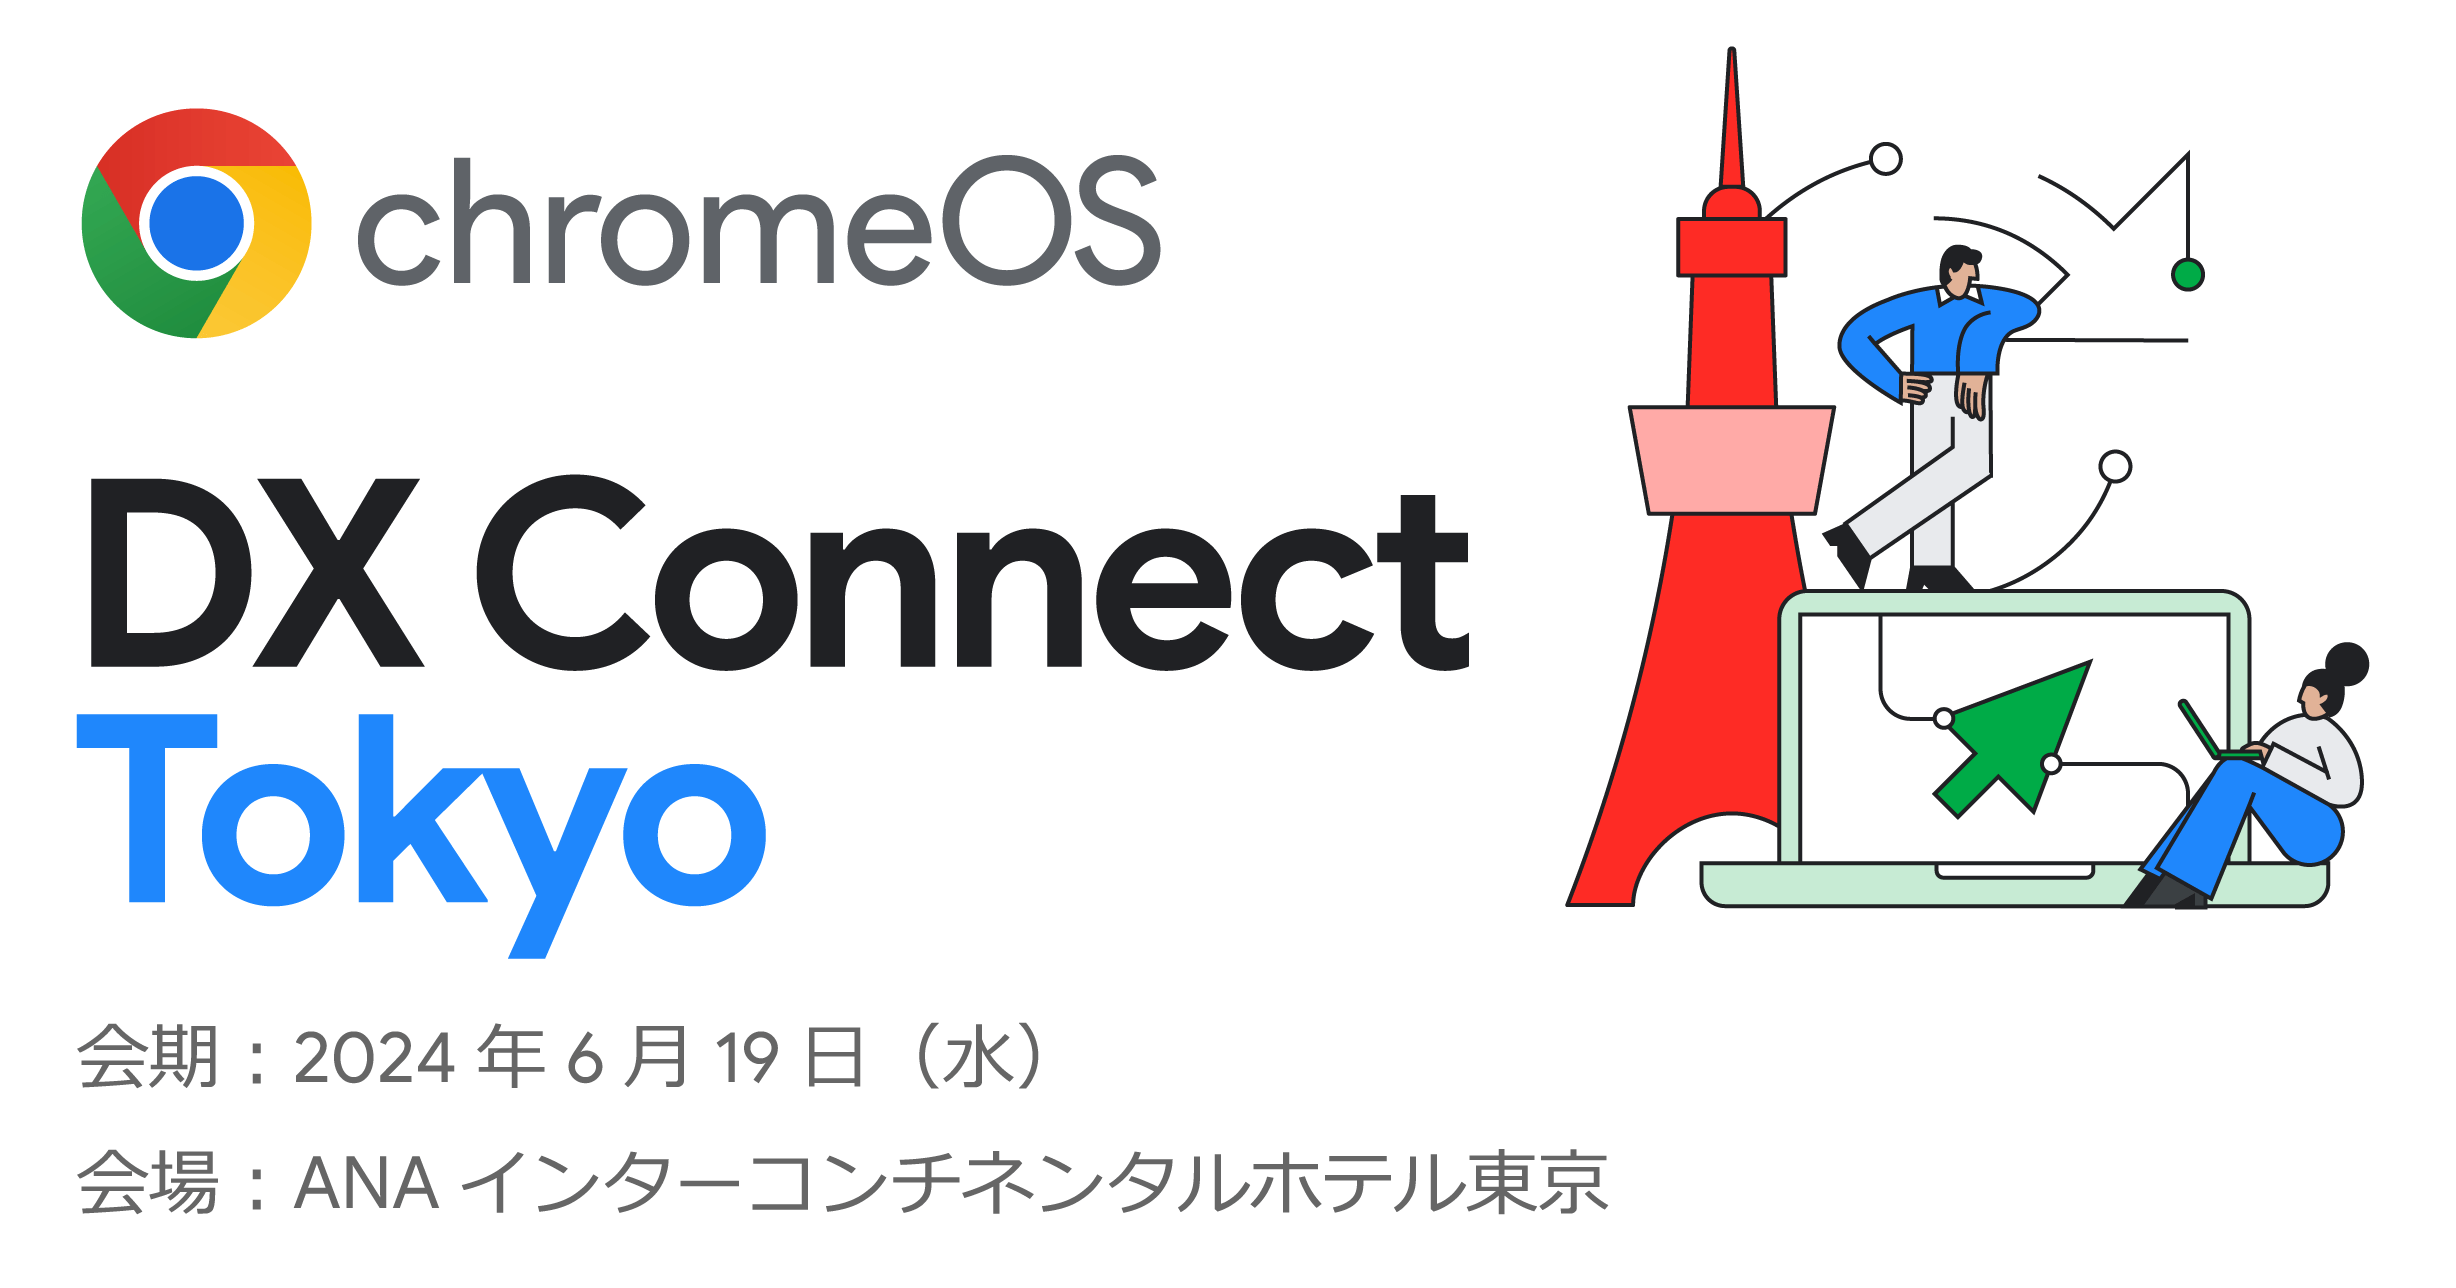 [ChromeOS] ChromeOS DX Connect Tokyo